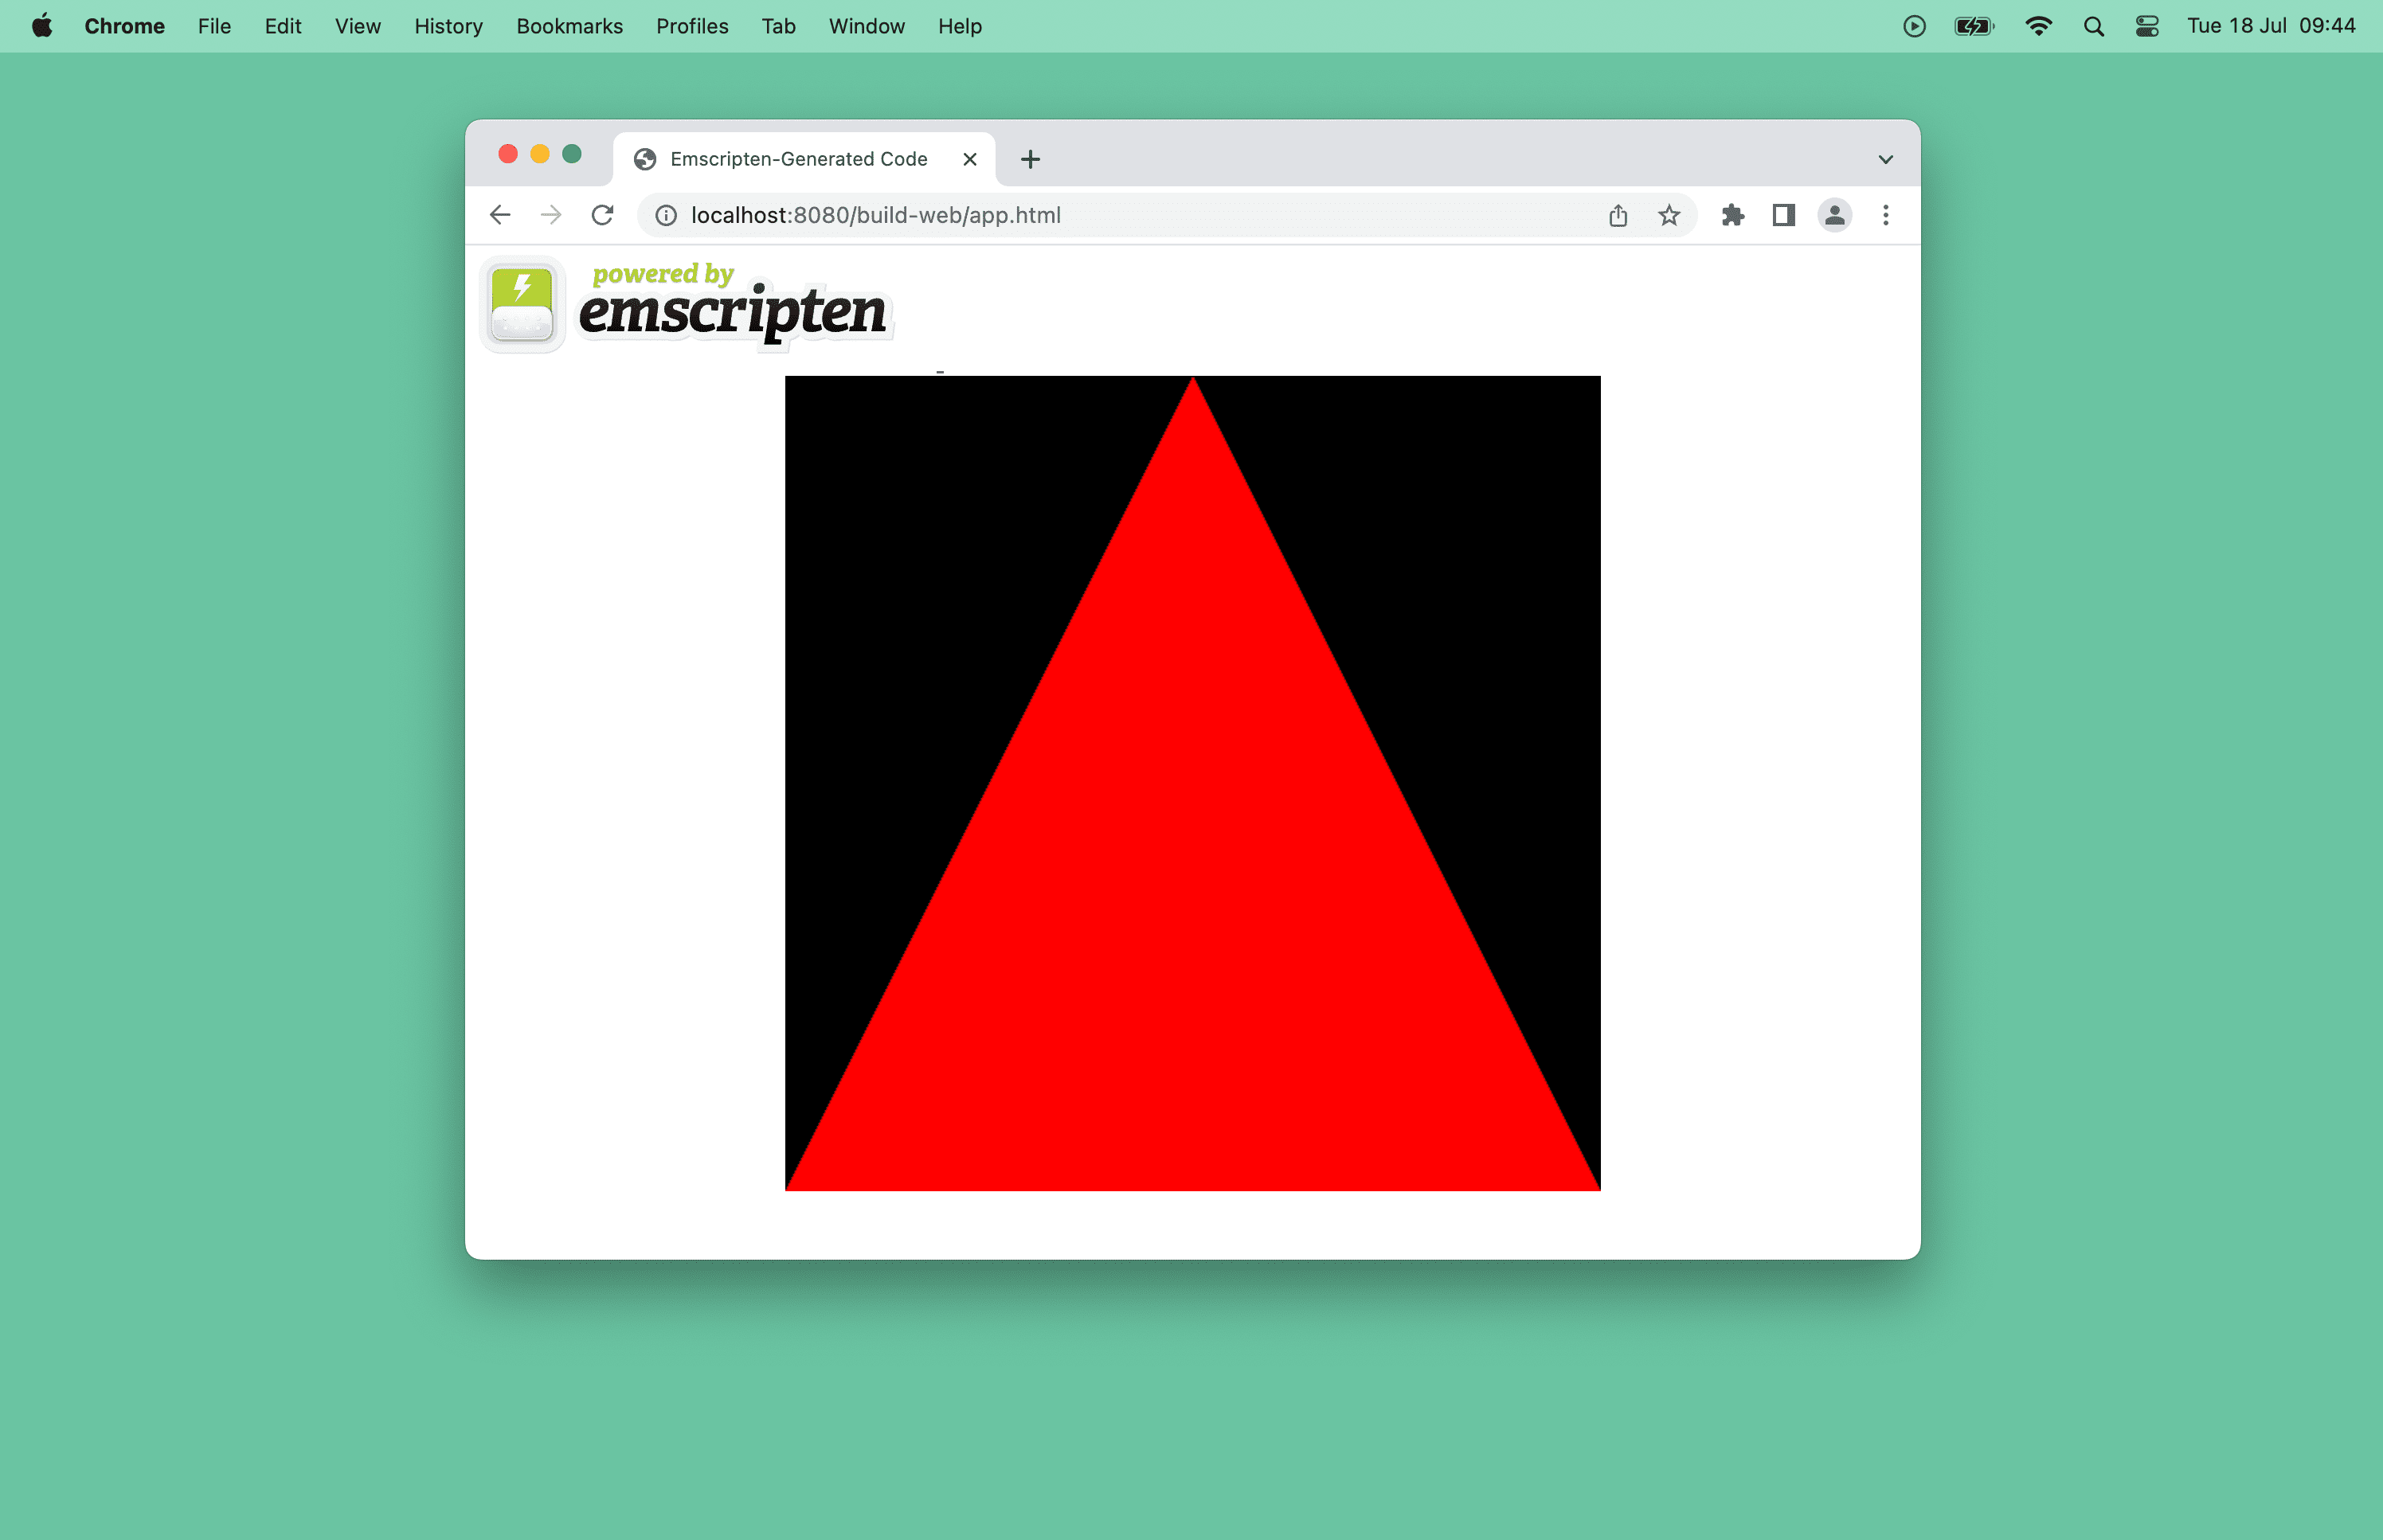 Скриншот красного треугольника в окне браузера.